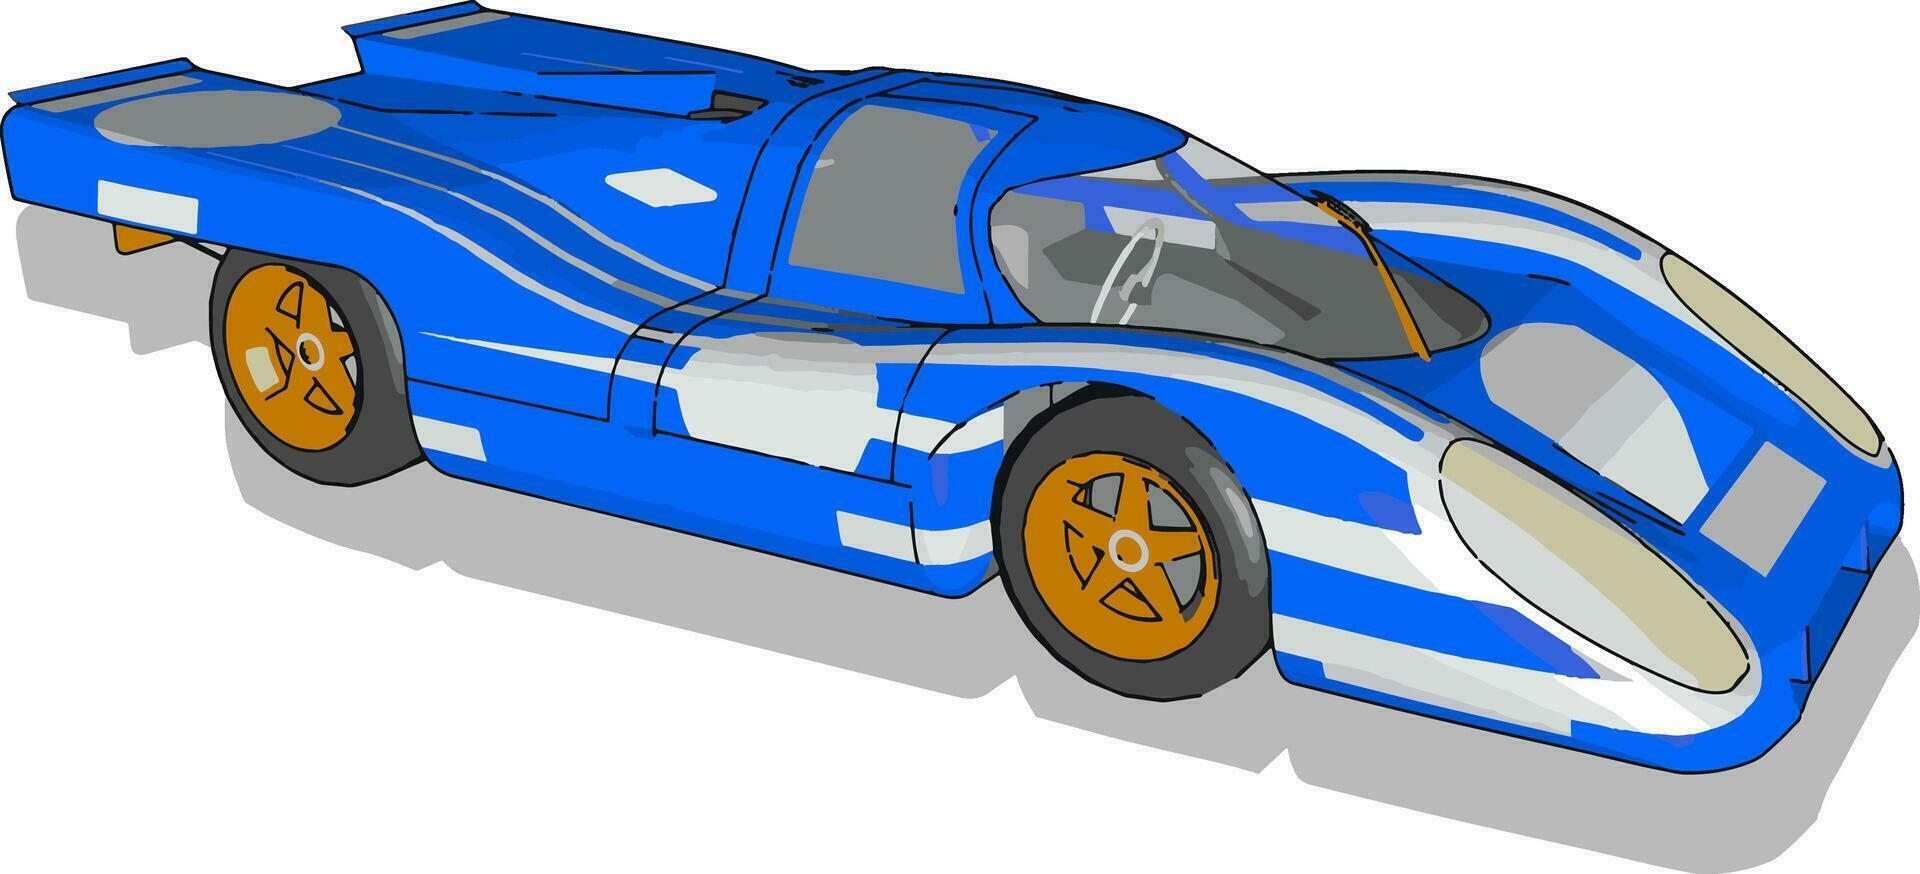 voiture de course bleue, illustration, vecteur sur fond blanc.